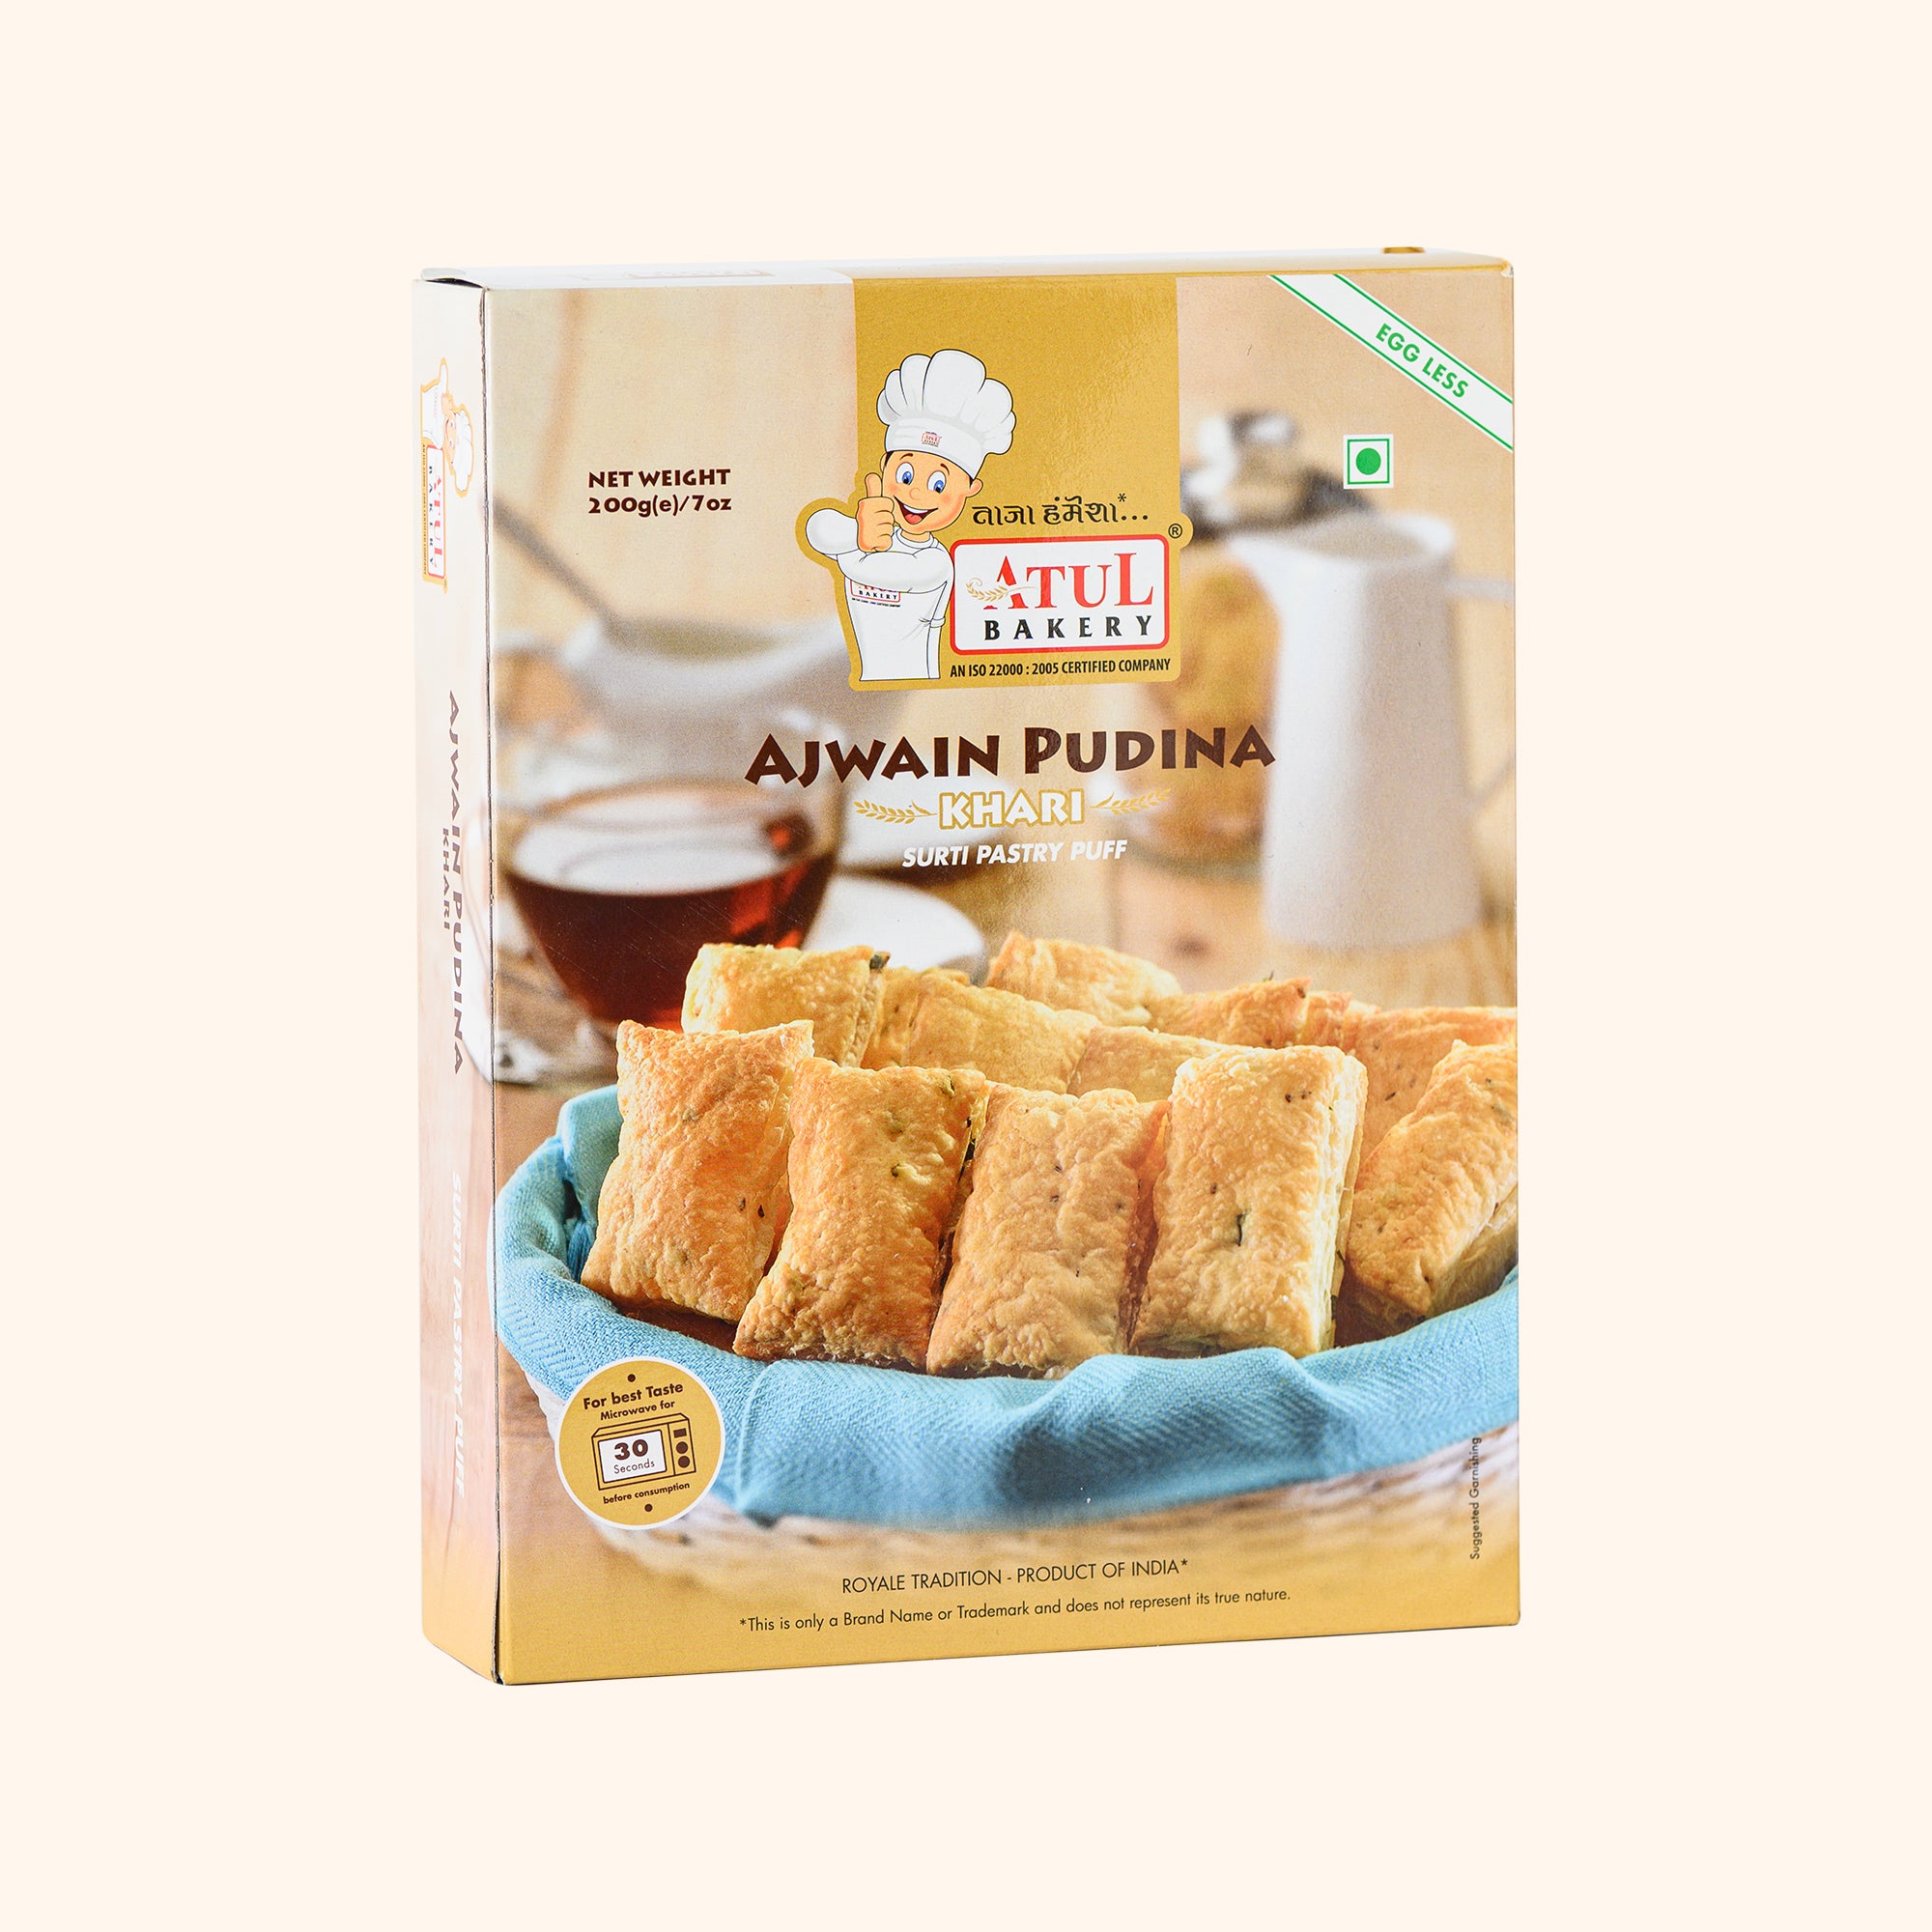 Atul Bakery Ajwain Pudina Khari || SURTI PASTRY PUFF || PRODUCT OF INDIA